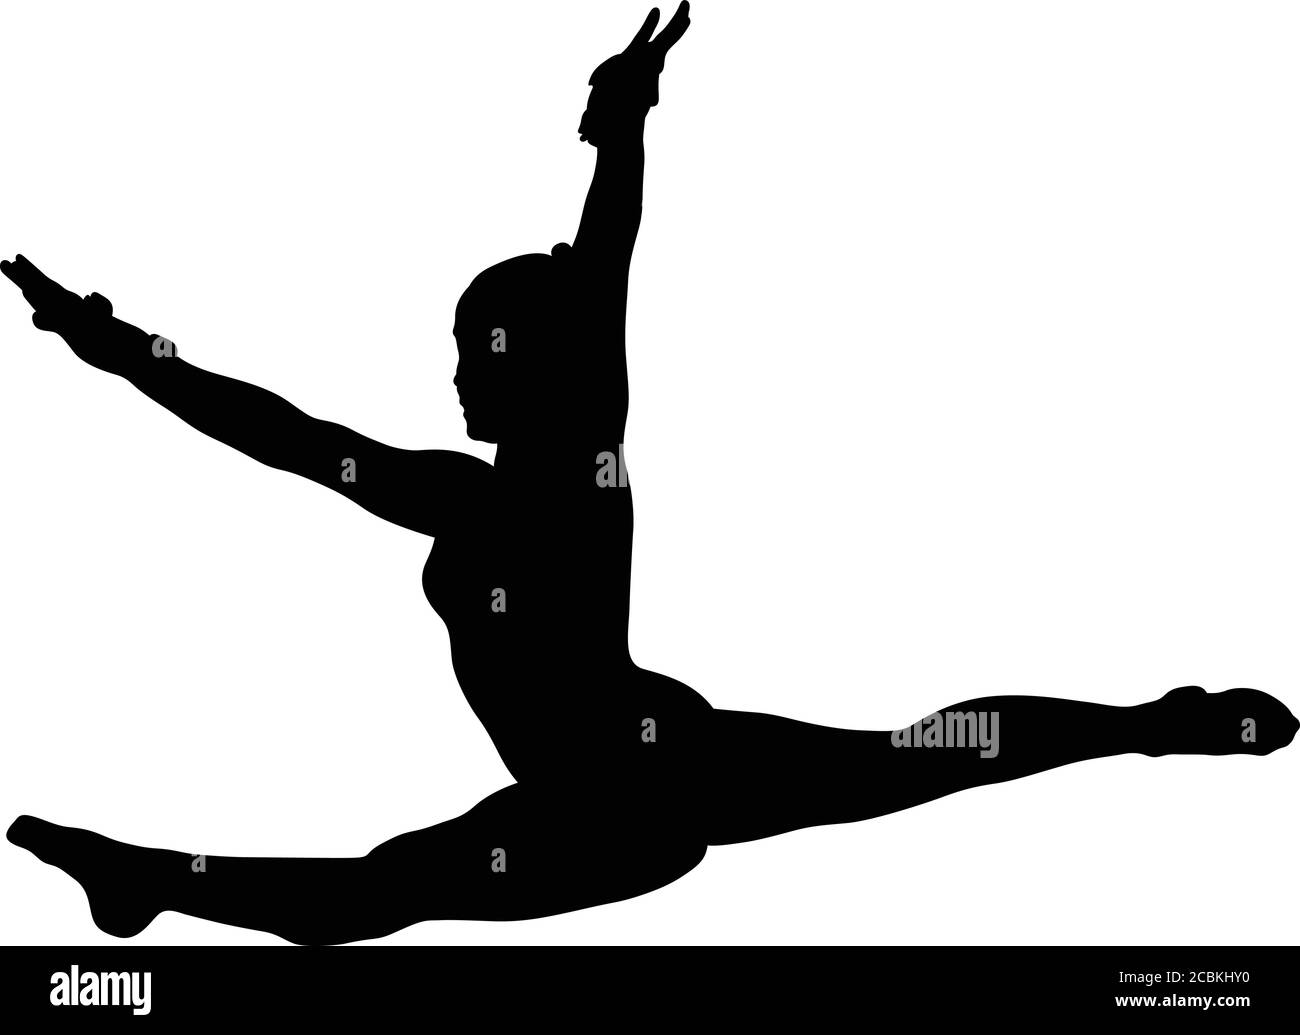 girl gymnast doing jump split leap black silhouette Stock Vector